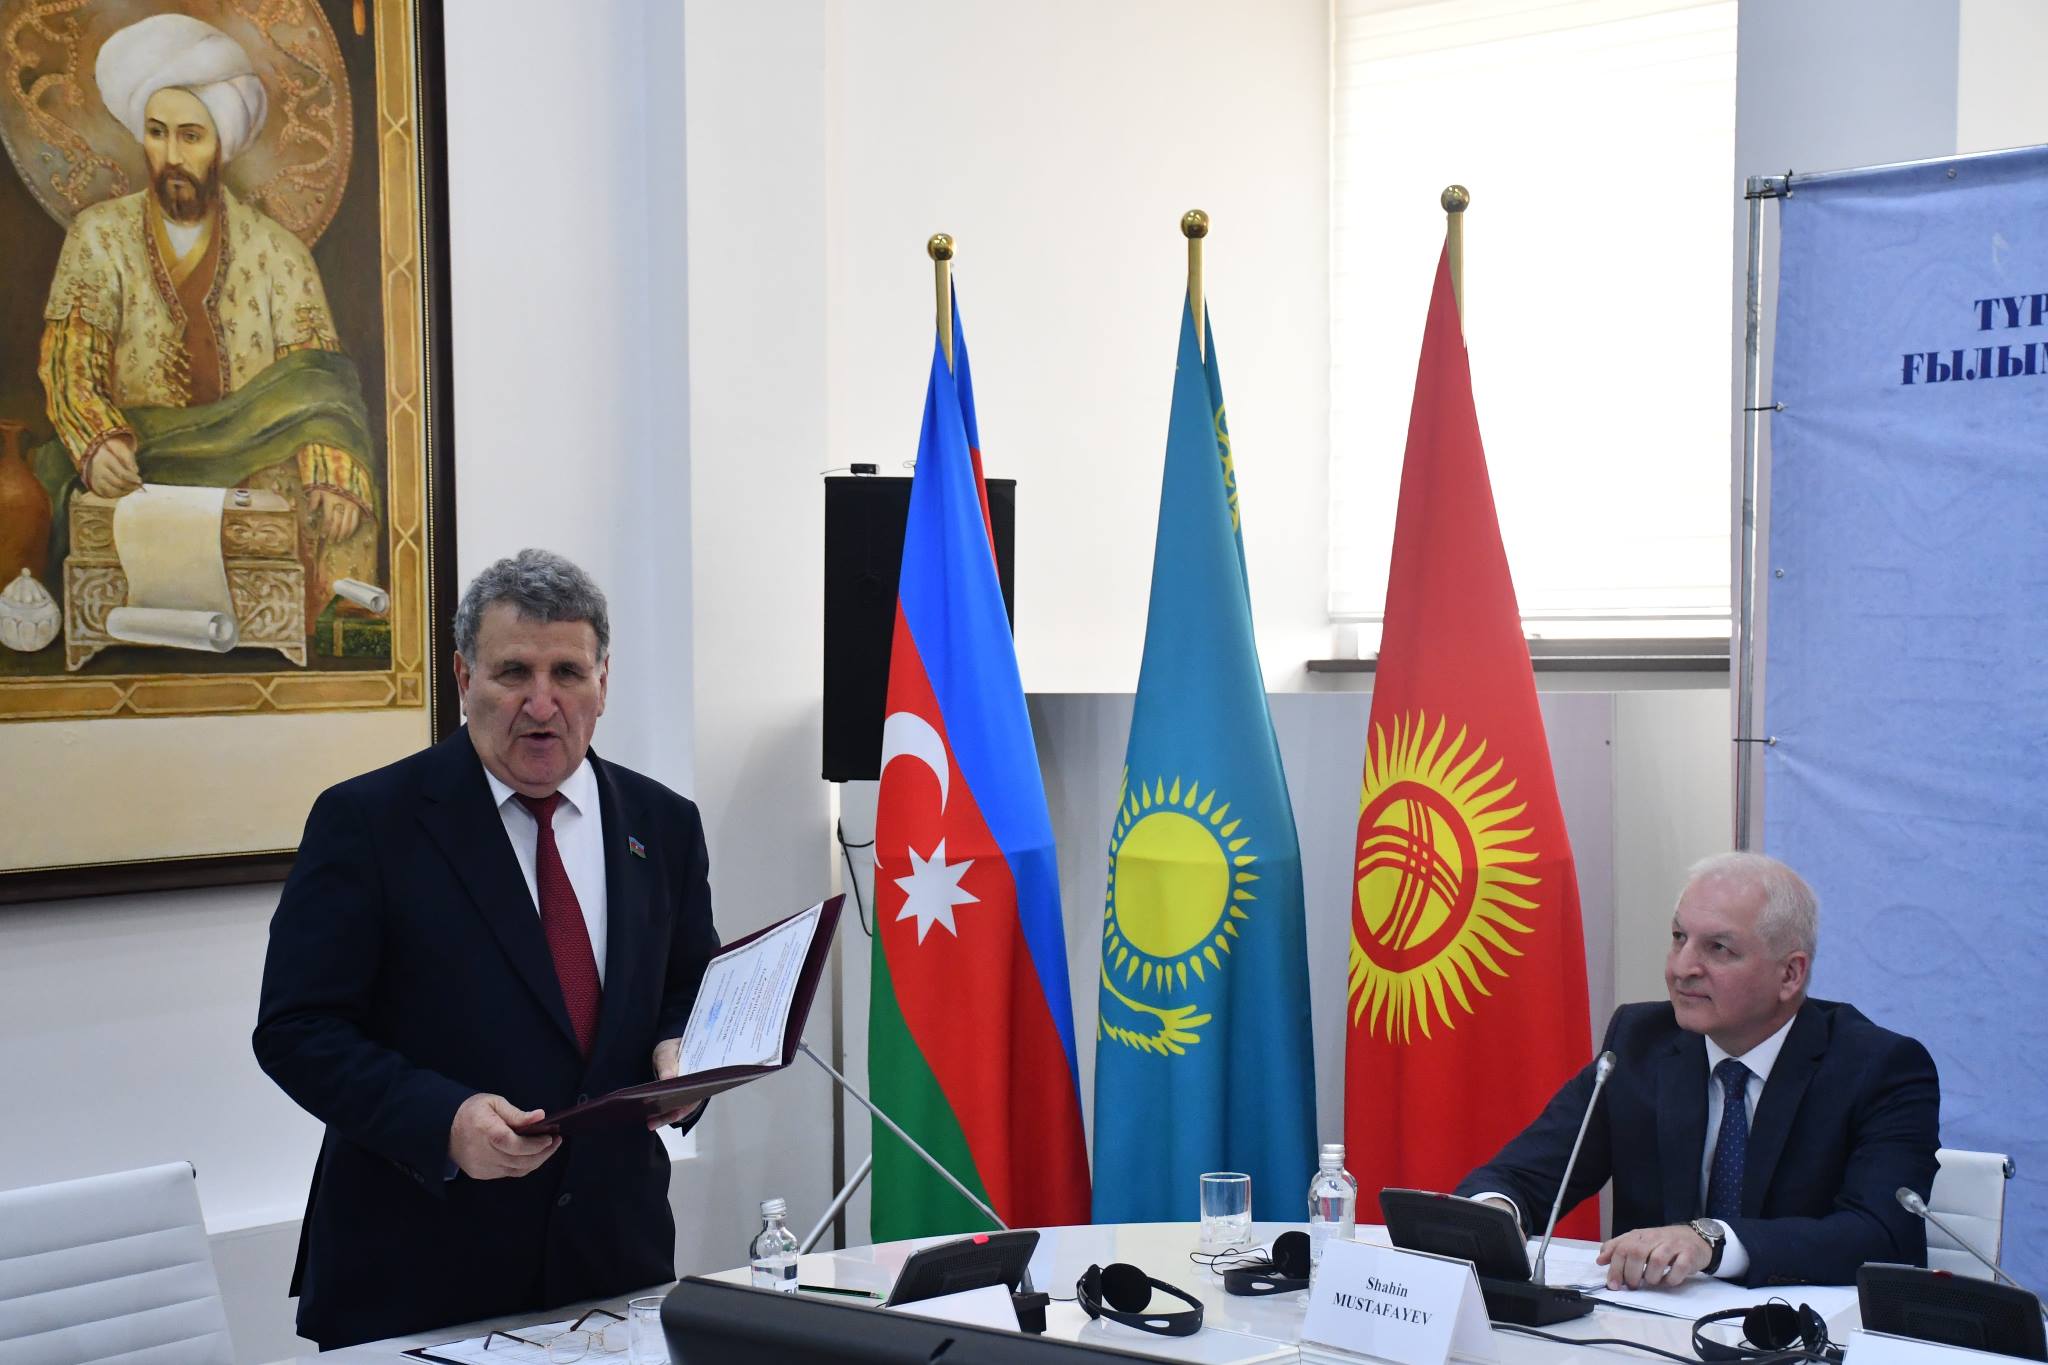 Состоялось VI заседание Генеральной Ассамблеи Союза национальных академий наук тюркского мира